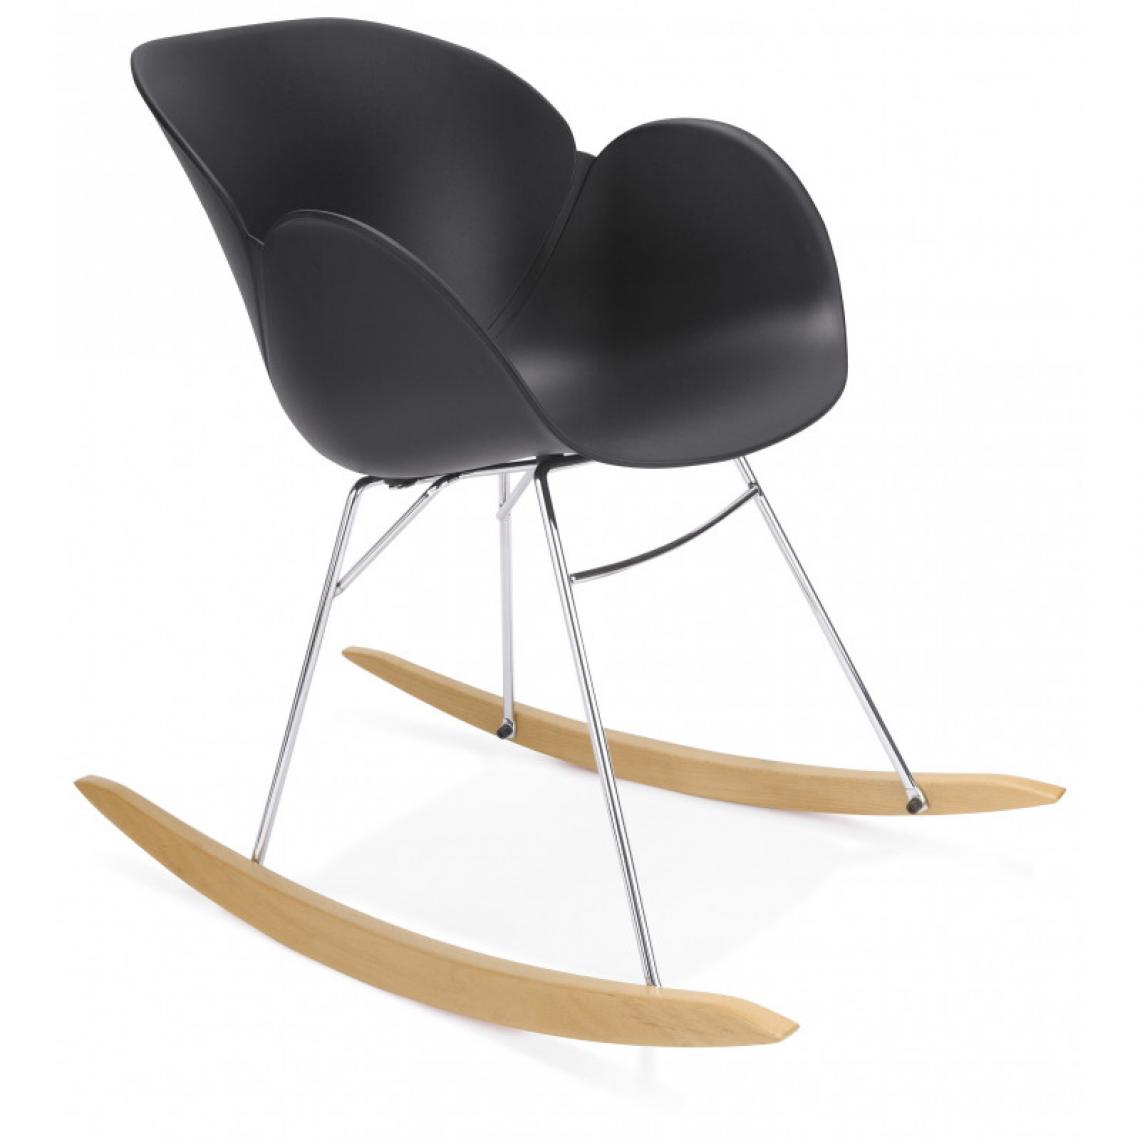 Kokoon Design - Rocking chair "knebel" kokoon - noir - Chaises